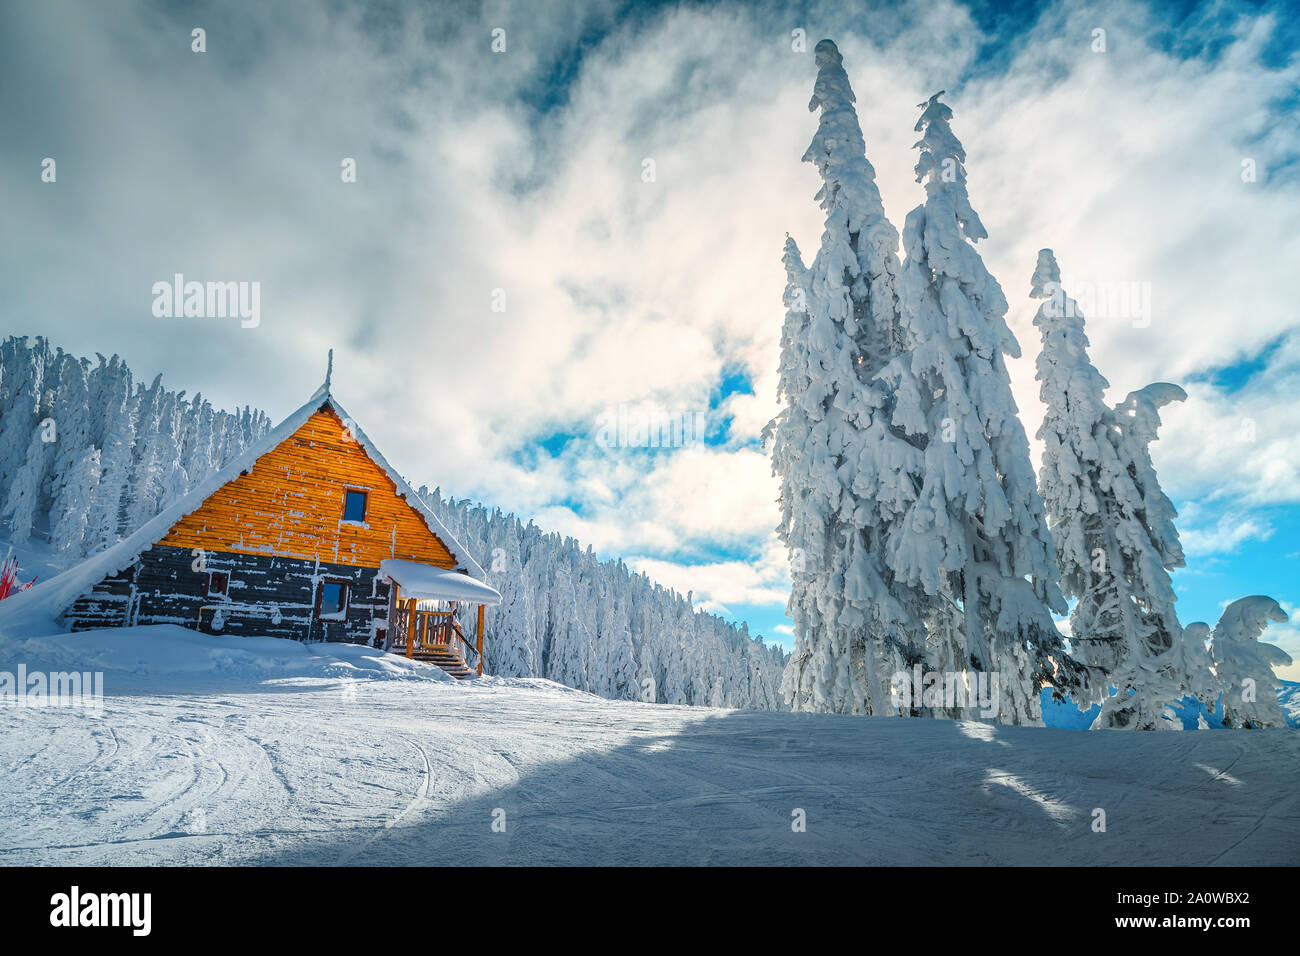 Die besten berühmten Winter Skigebiet in Rumänien. Atemberaubende touristischen und Winterurlaub. Snowy Pinien nach Blizzard in Poiana Brasov Ski Resor Stockfoto